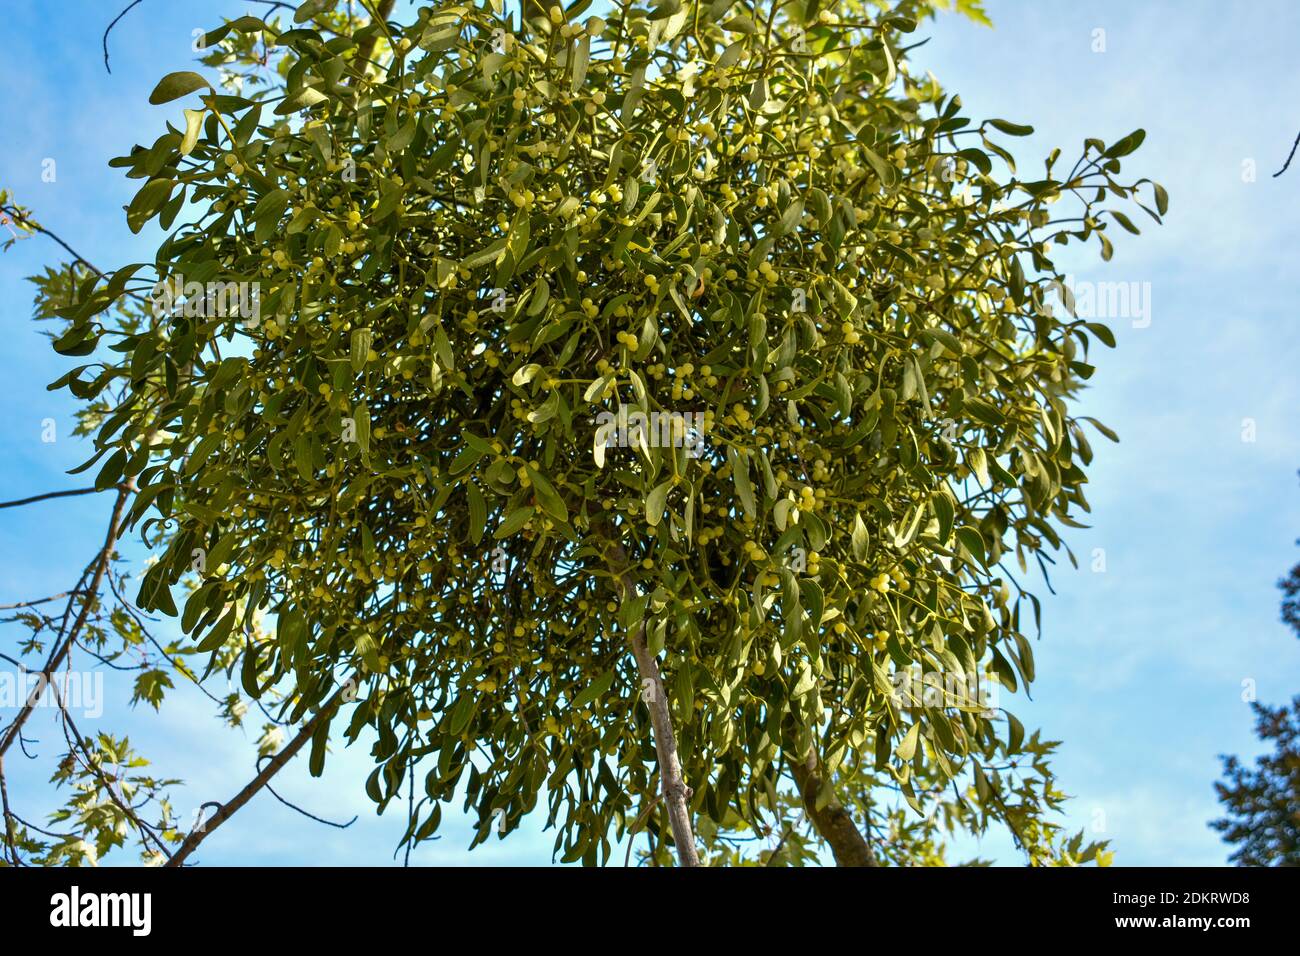 Mistletoe on a tree Stock Photo